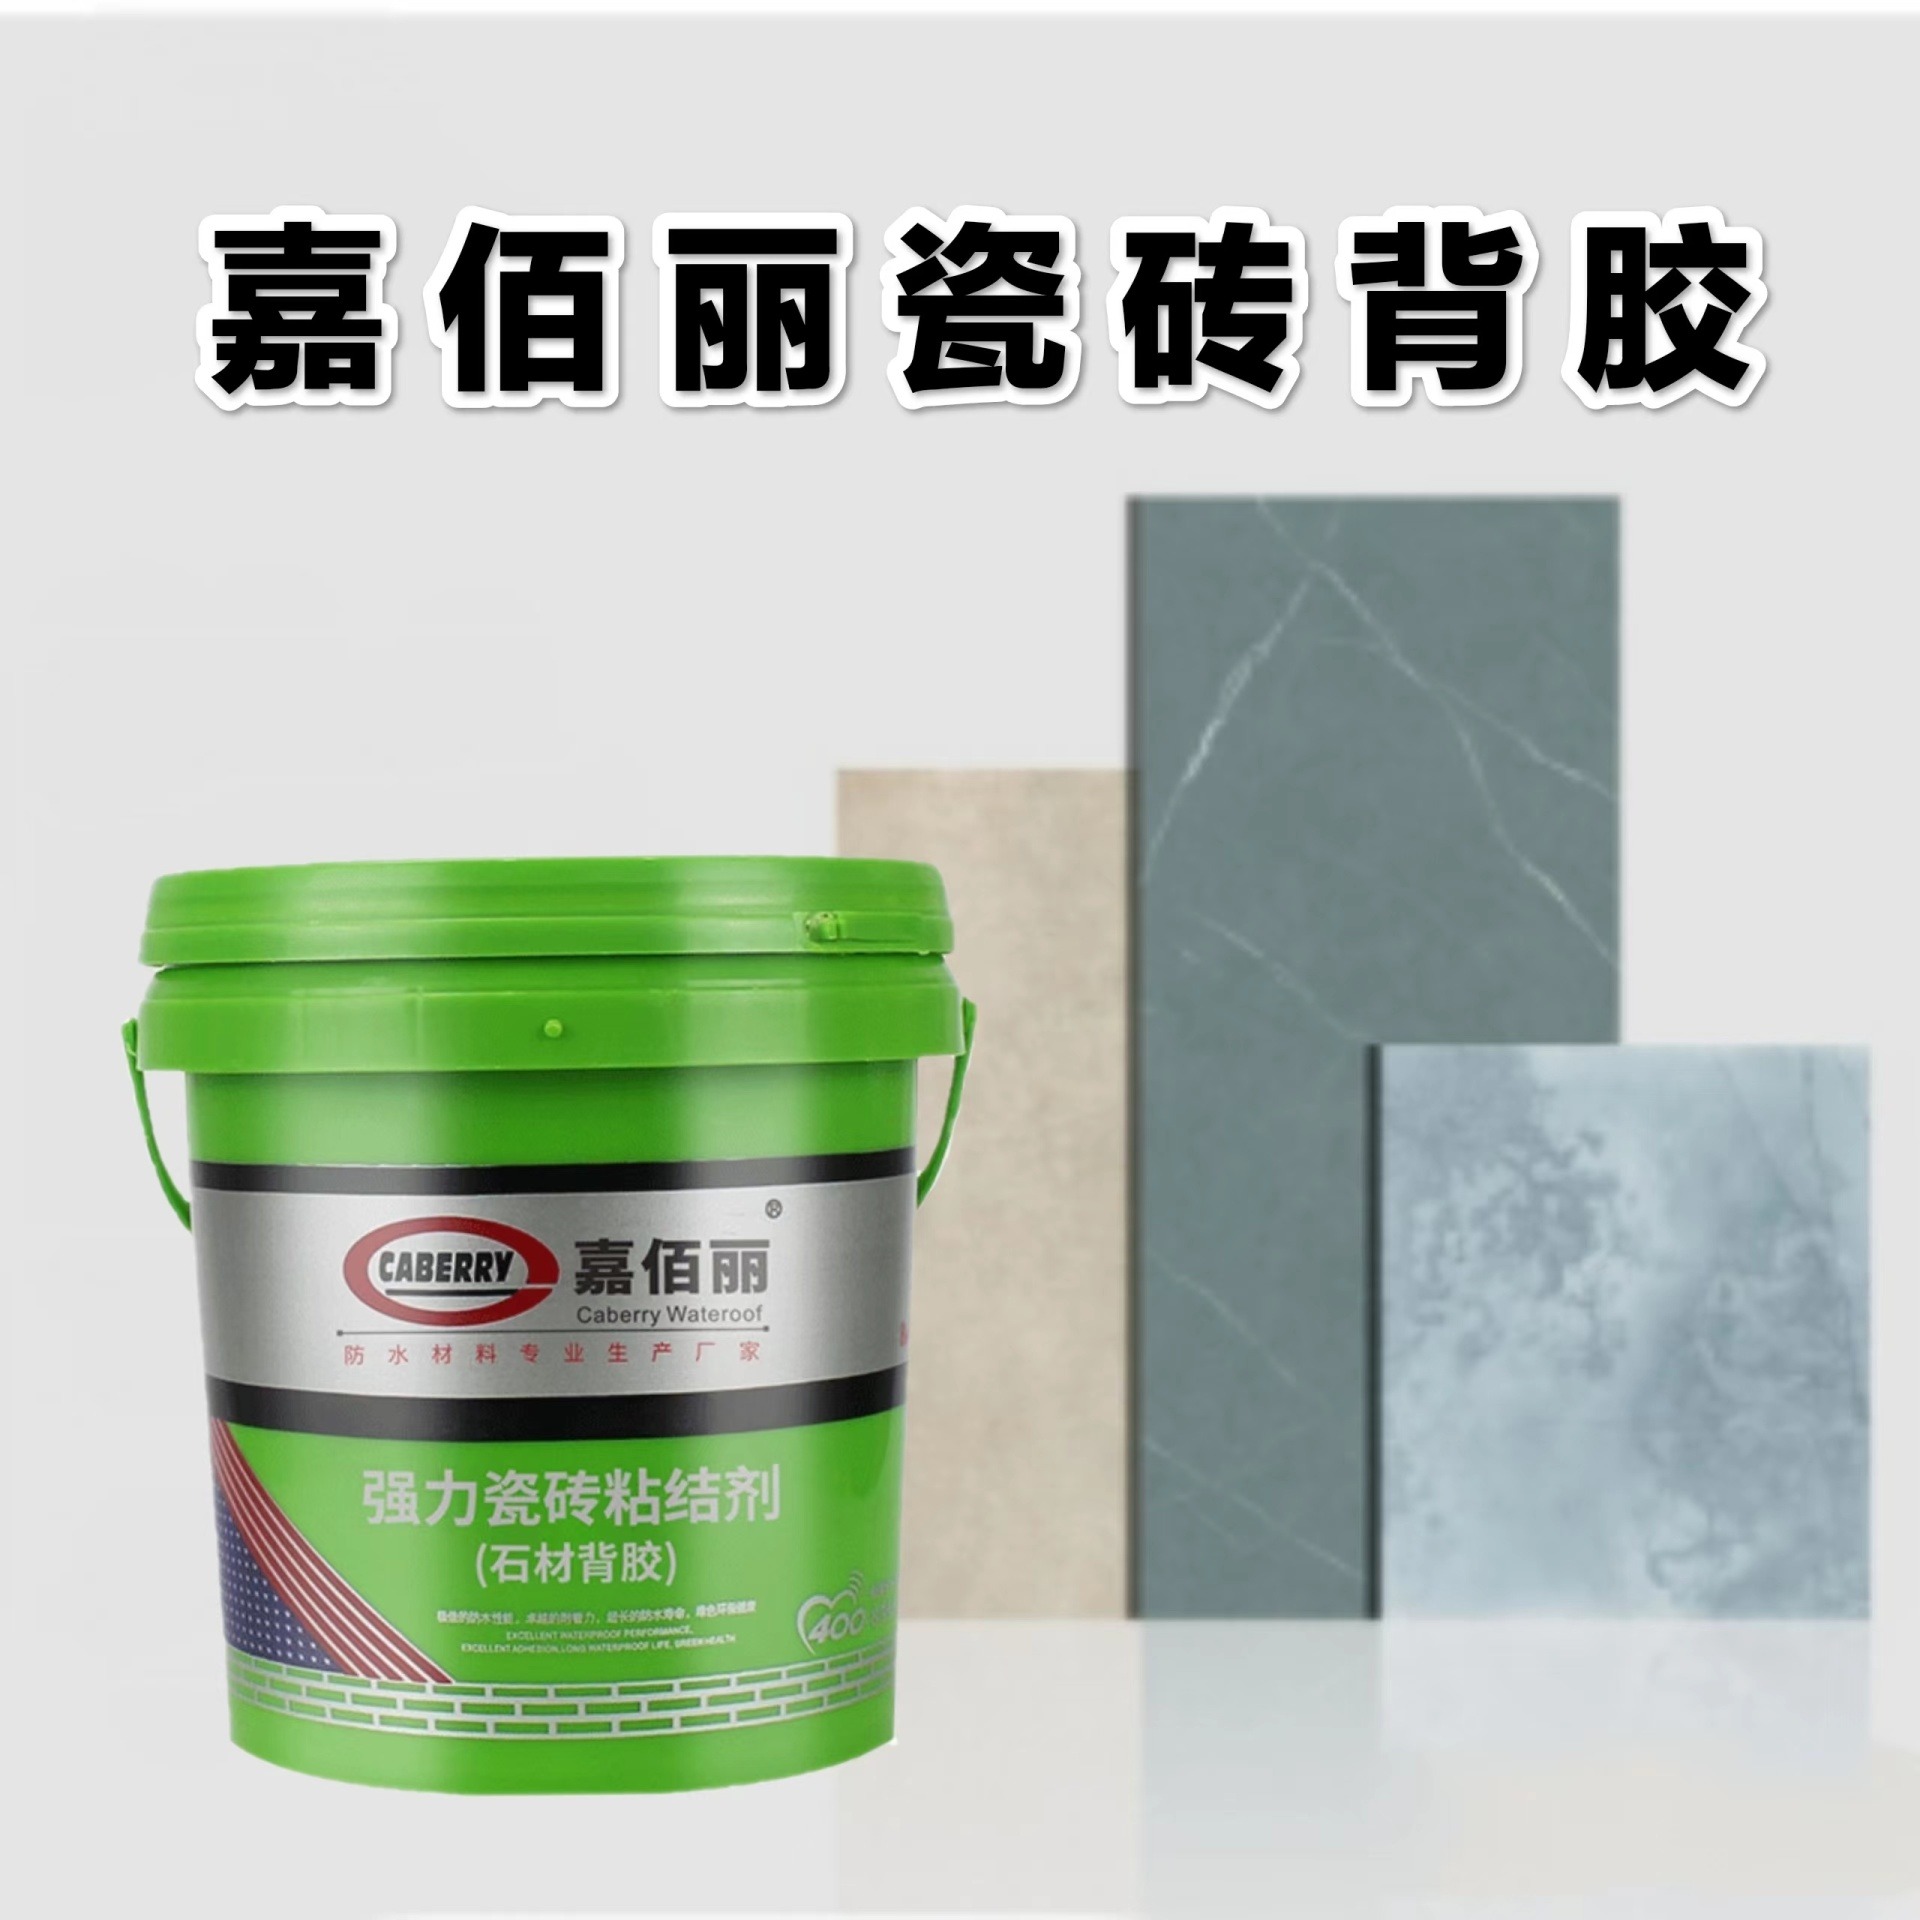 广东玻化砖背胶 嘉佰丽瓷砖背胶 强力瓷砖粘结剂 厂家品牌代理